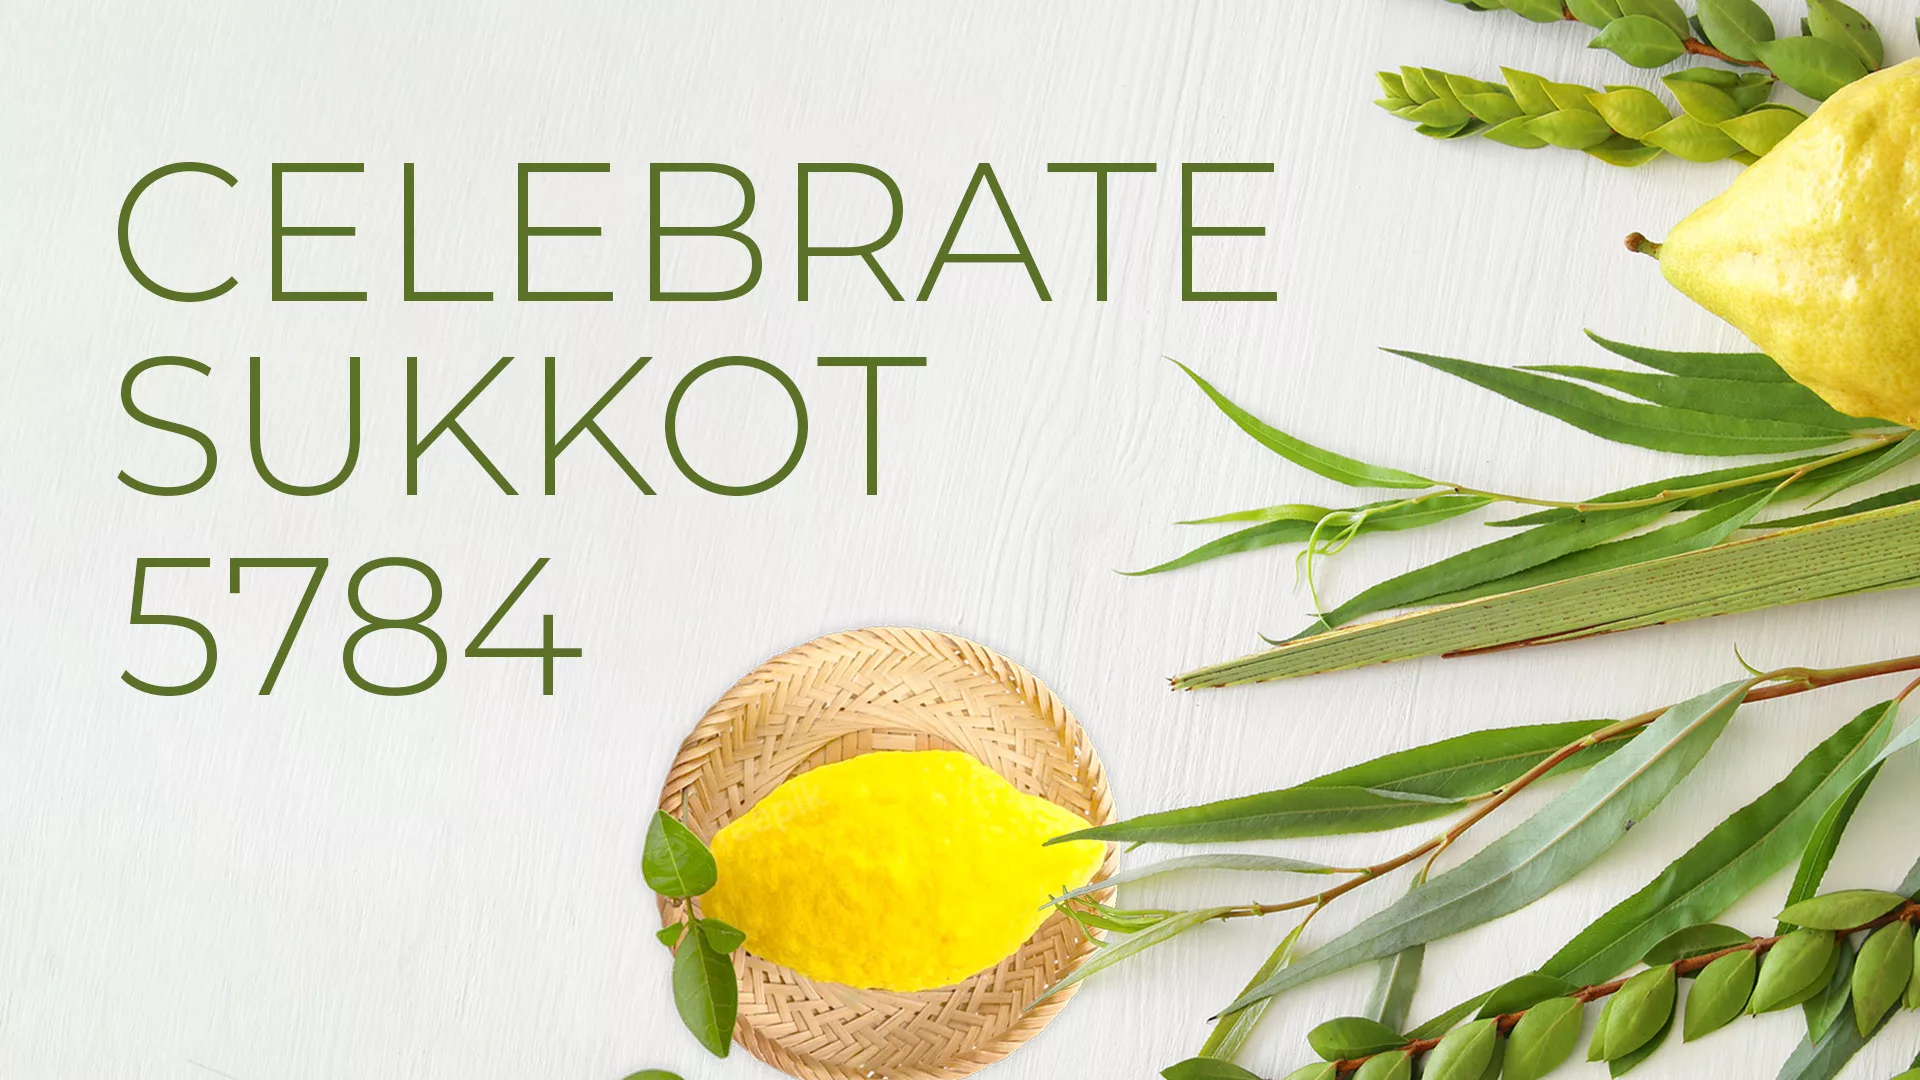 Celebrate Sukkot 5784